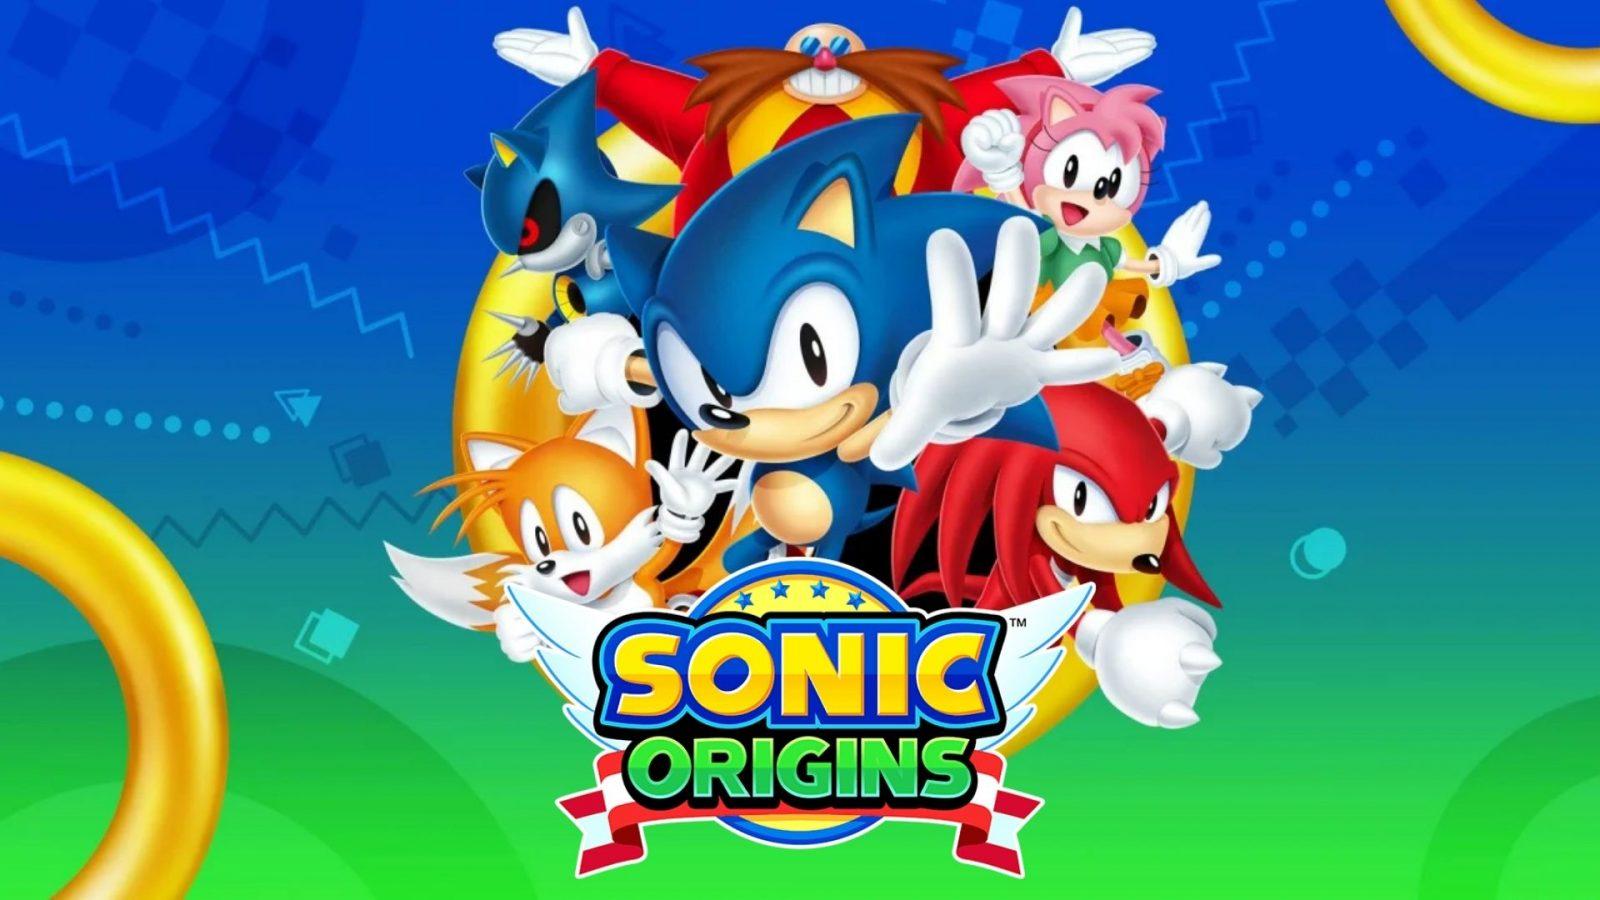 Sonic Frontiers - KeenGamer